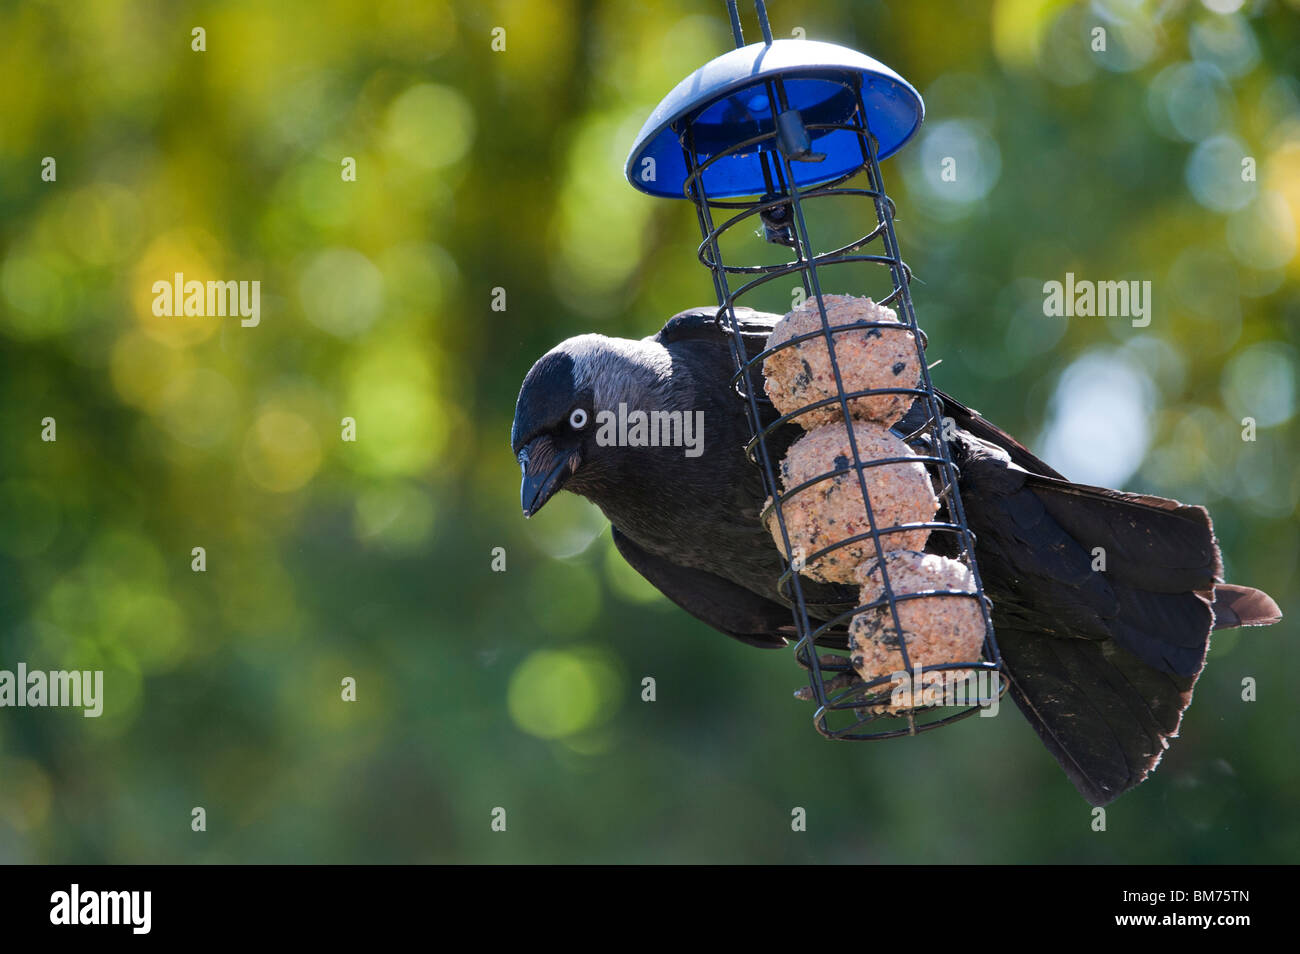 Corvus monedula. Dohle auf einem suet ball Feeder in einen englischen Garten. Großbritannien Stockfoto